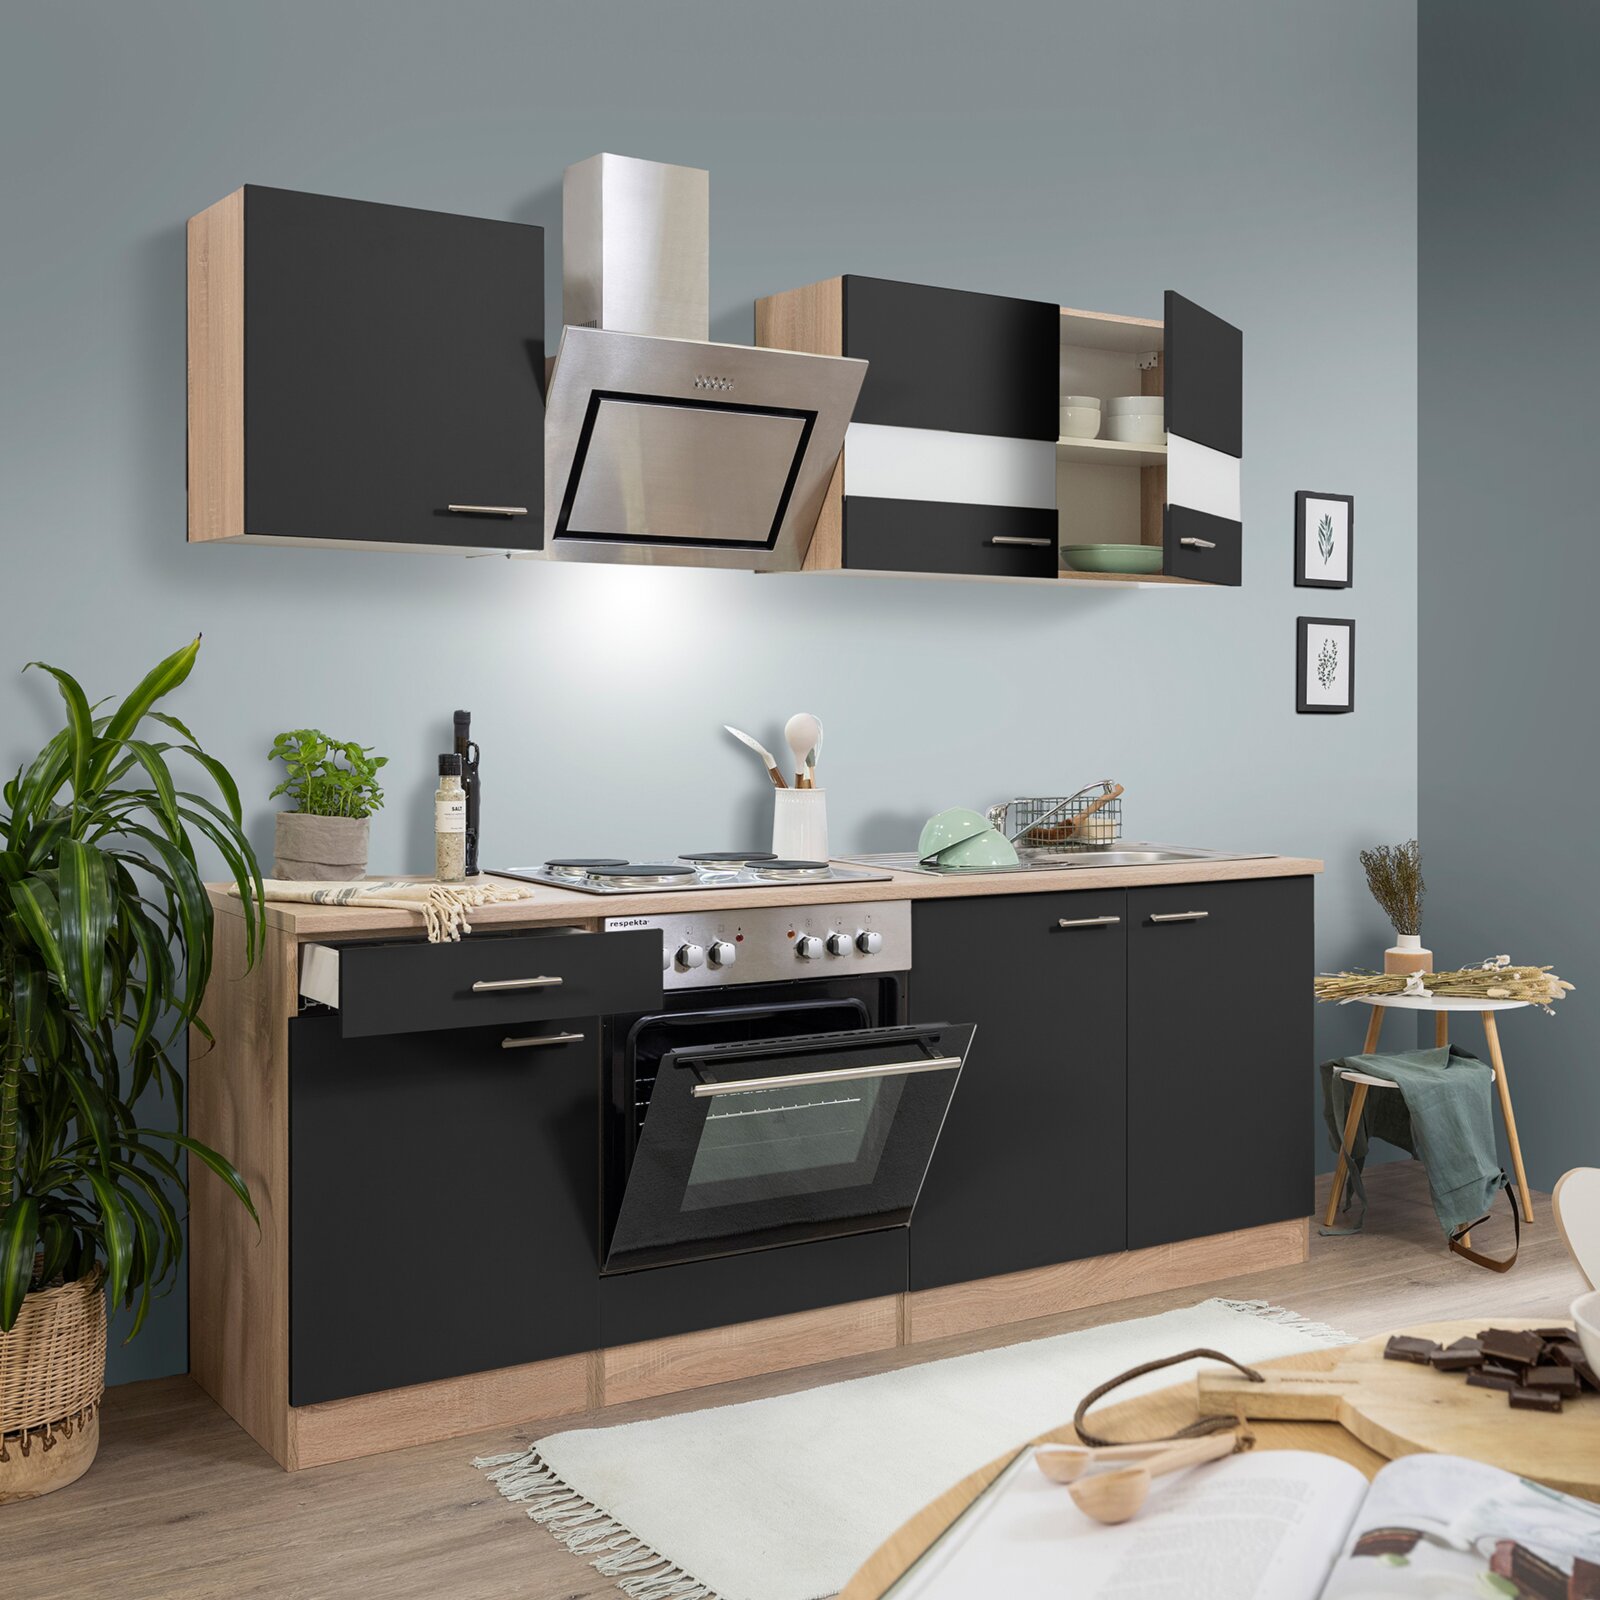 RESPEKTA Küchenzeile - schwarz - Eiche sägerau - mit E-Geräten - 210 cm |  Online bei ROLLER kaufen